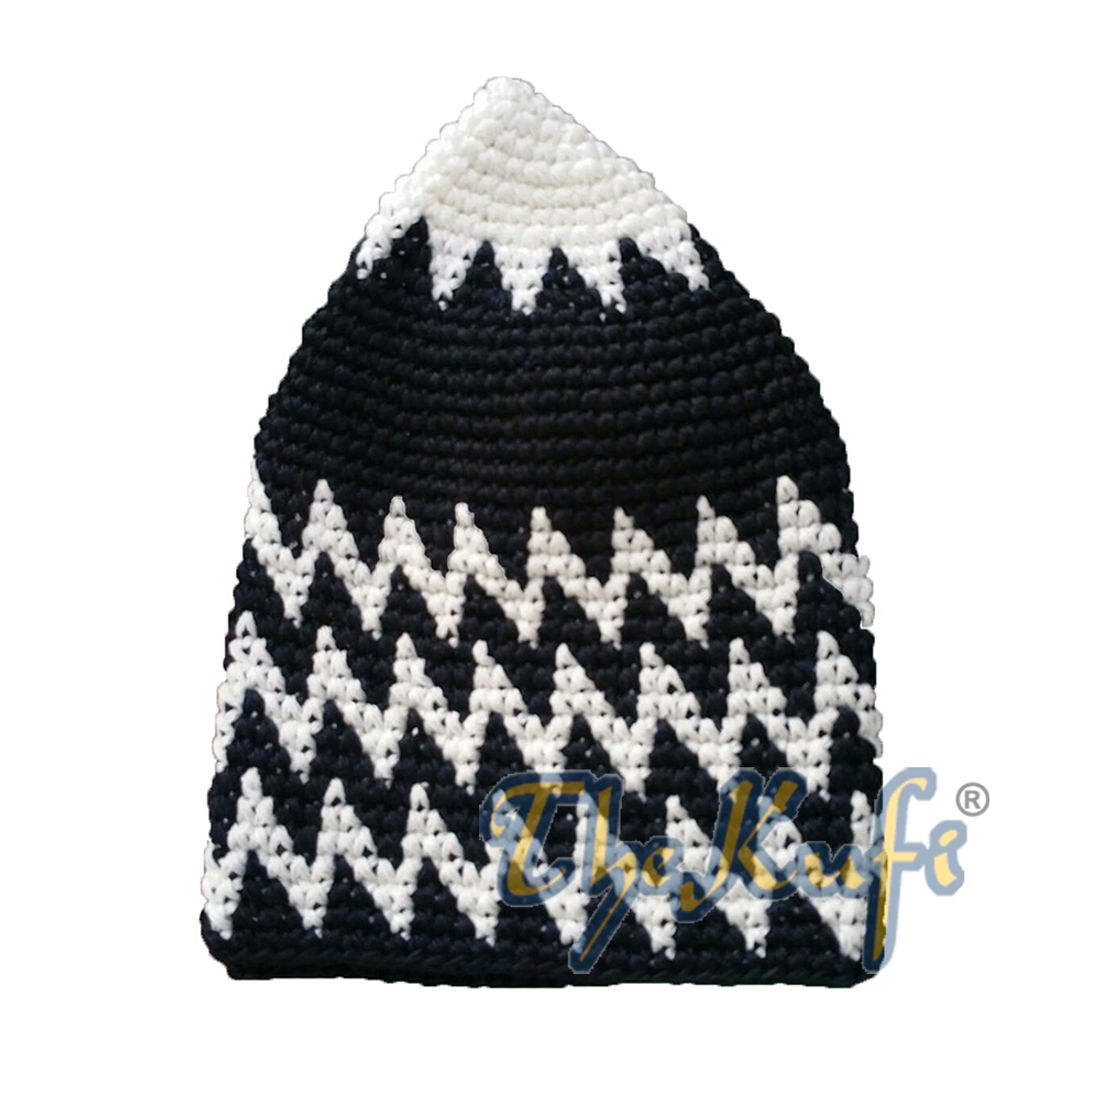 Hand-crocheted Cotton Sturdy White & Black Mix Zigzag Kufi Hat